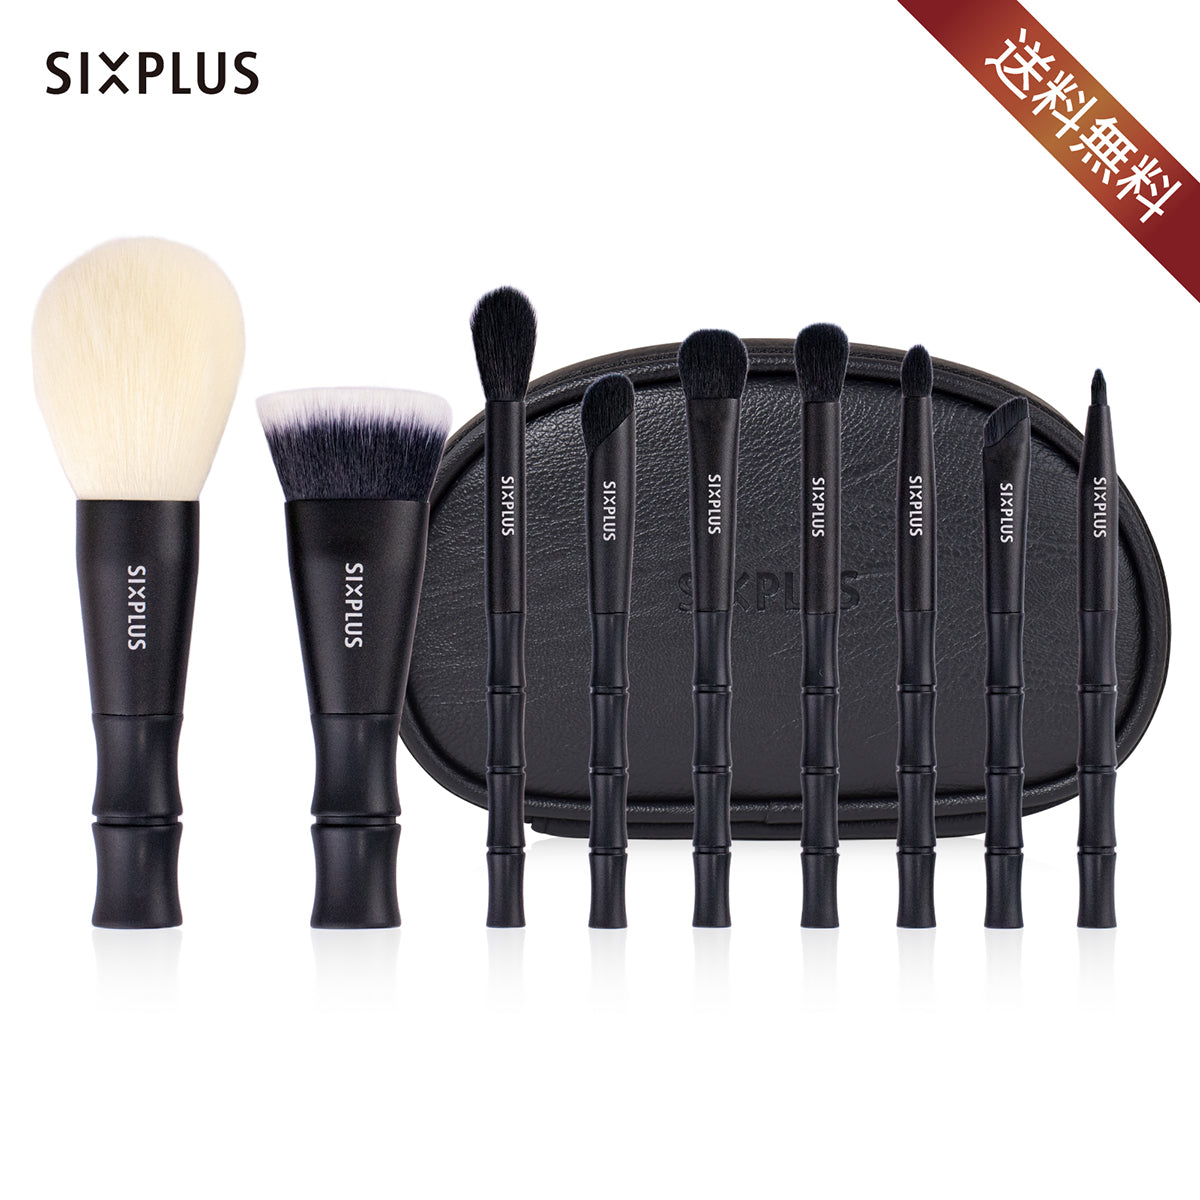 コスメ/美容SIXPLUS 黒竹メイクブラシ9本セット 人気 化粧ブラシ ファンデーションブ